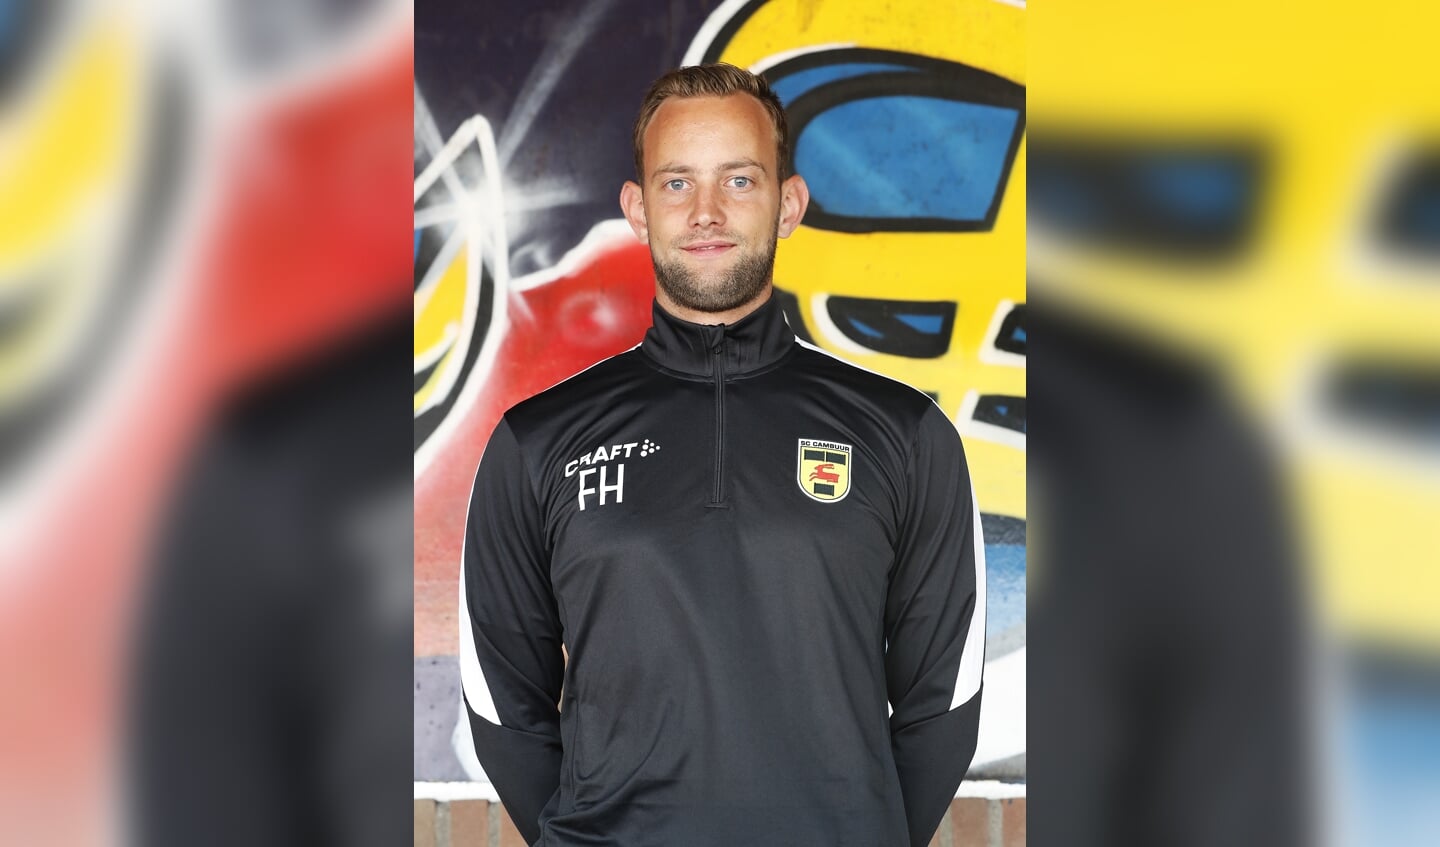 seizoen 2019 - 2020, Fedrik Houtstra